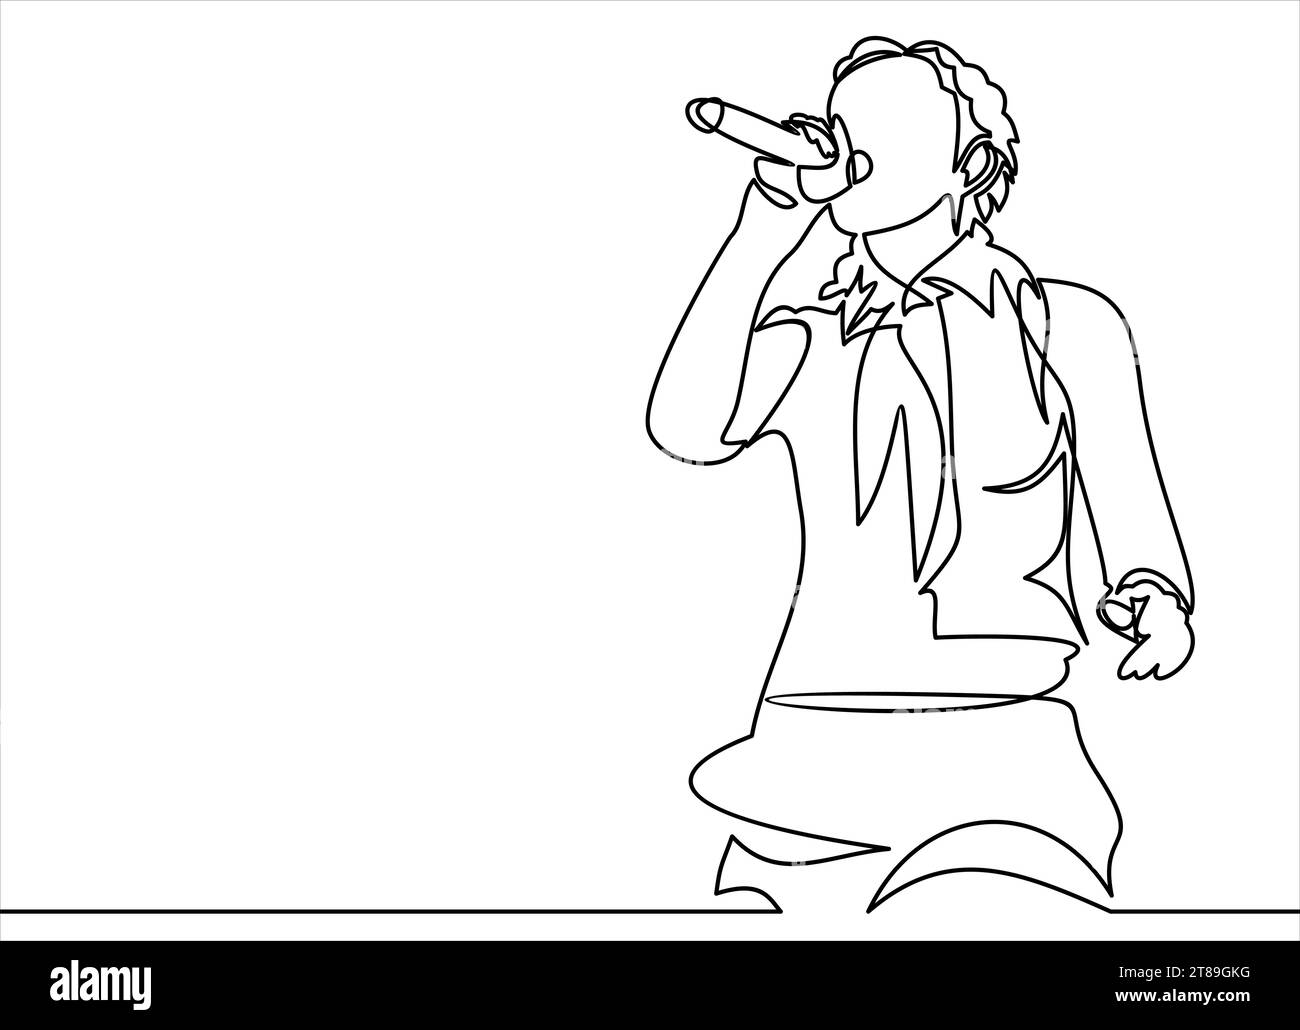 donna che canta con il microfono nelle mani illustrazione vettoriale. vocalist della band musicale.disegno continuo delle linee Illustrazione Vettoriale